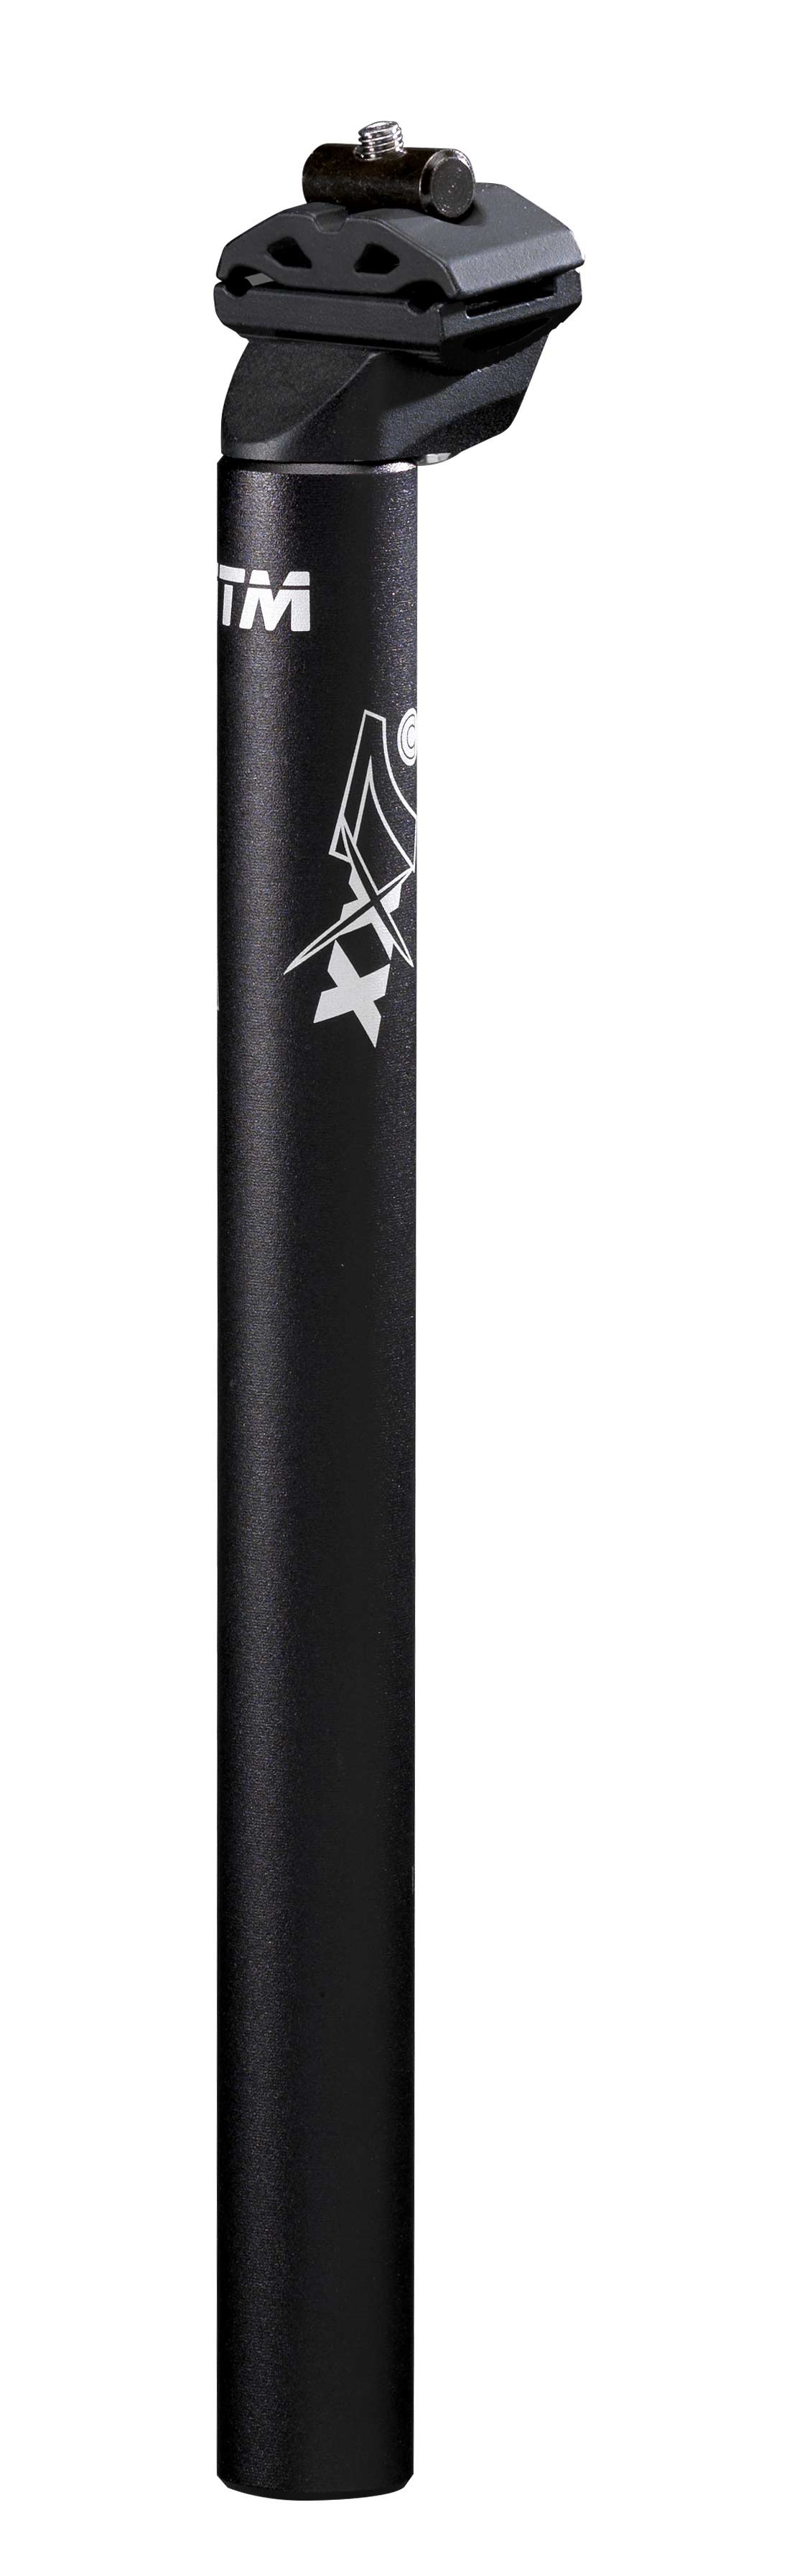 sedlovka ITM XX7c 31,6/350 mm, hliníková, černá Typ: pevná, průměr: 31,6, materiál: hliník